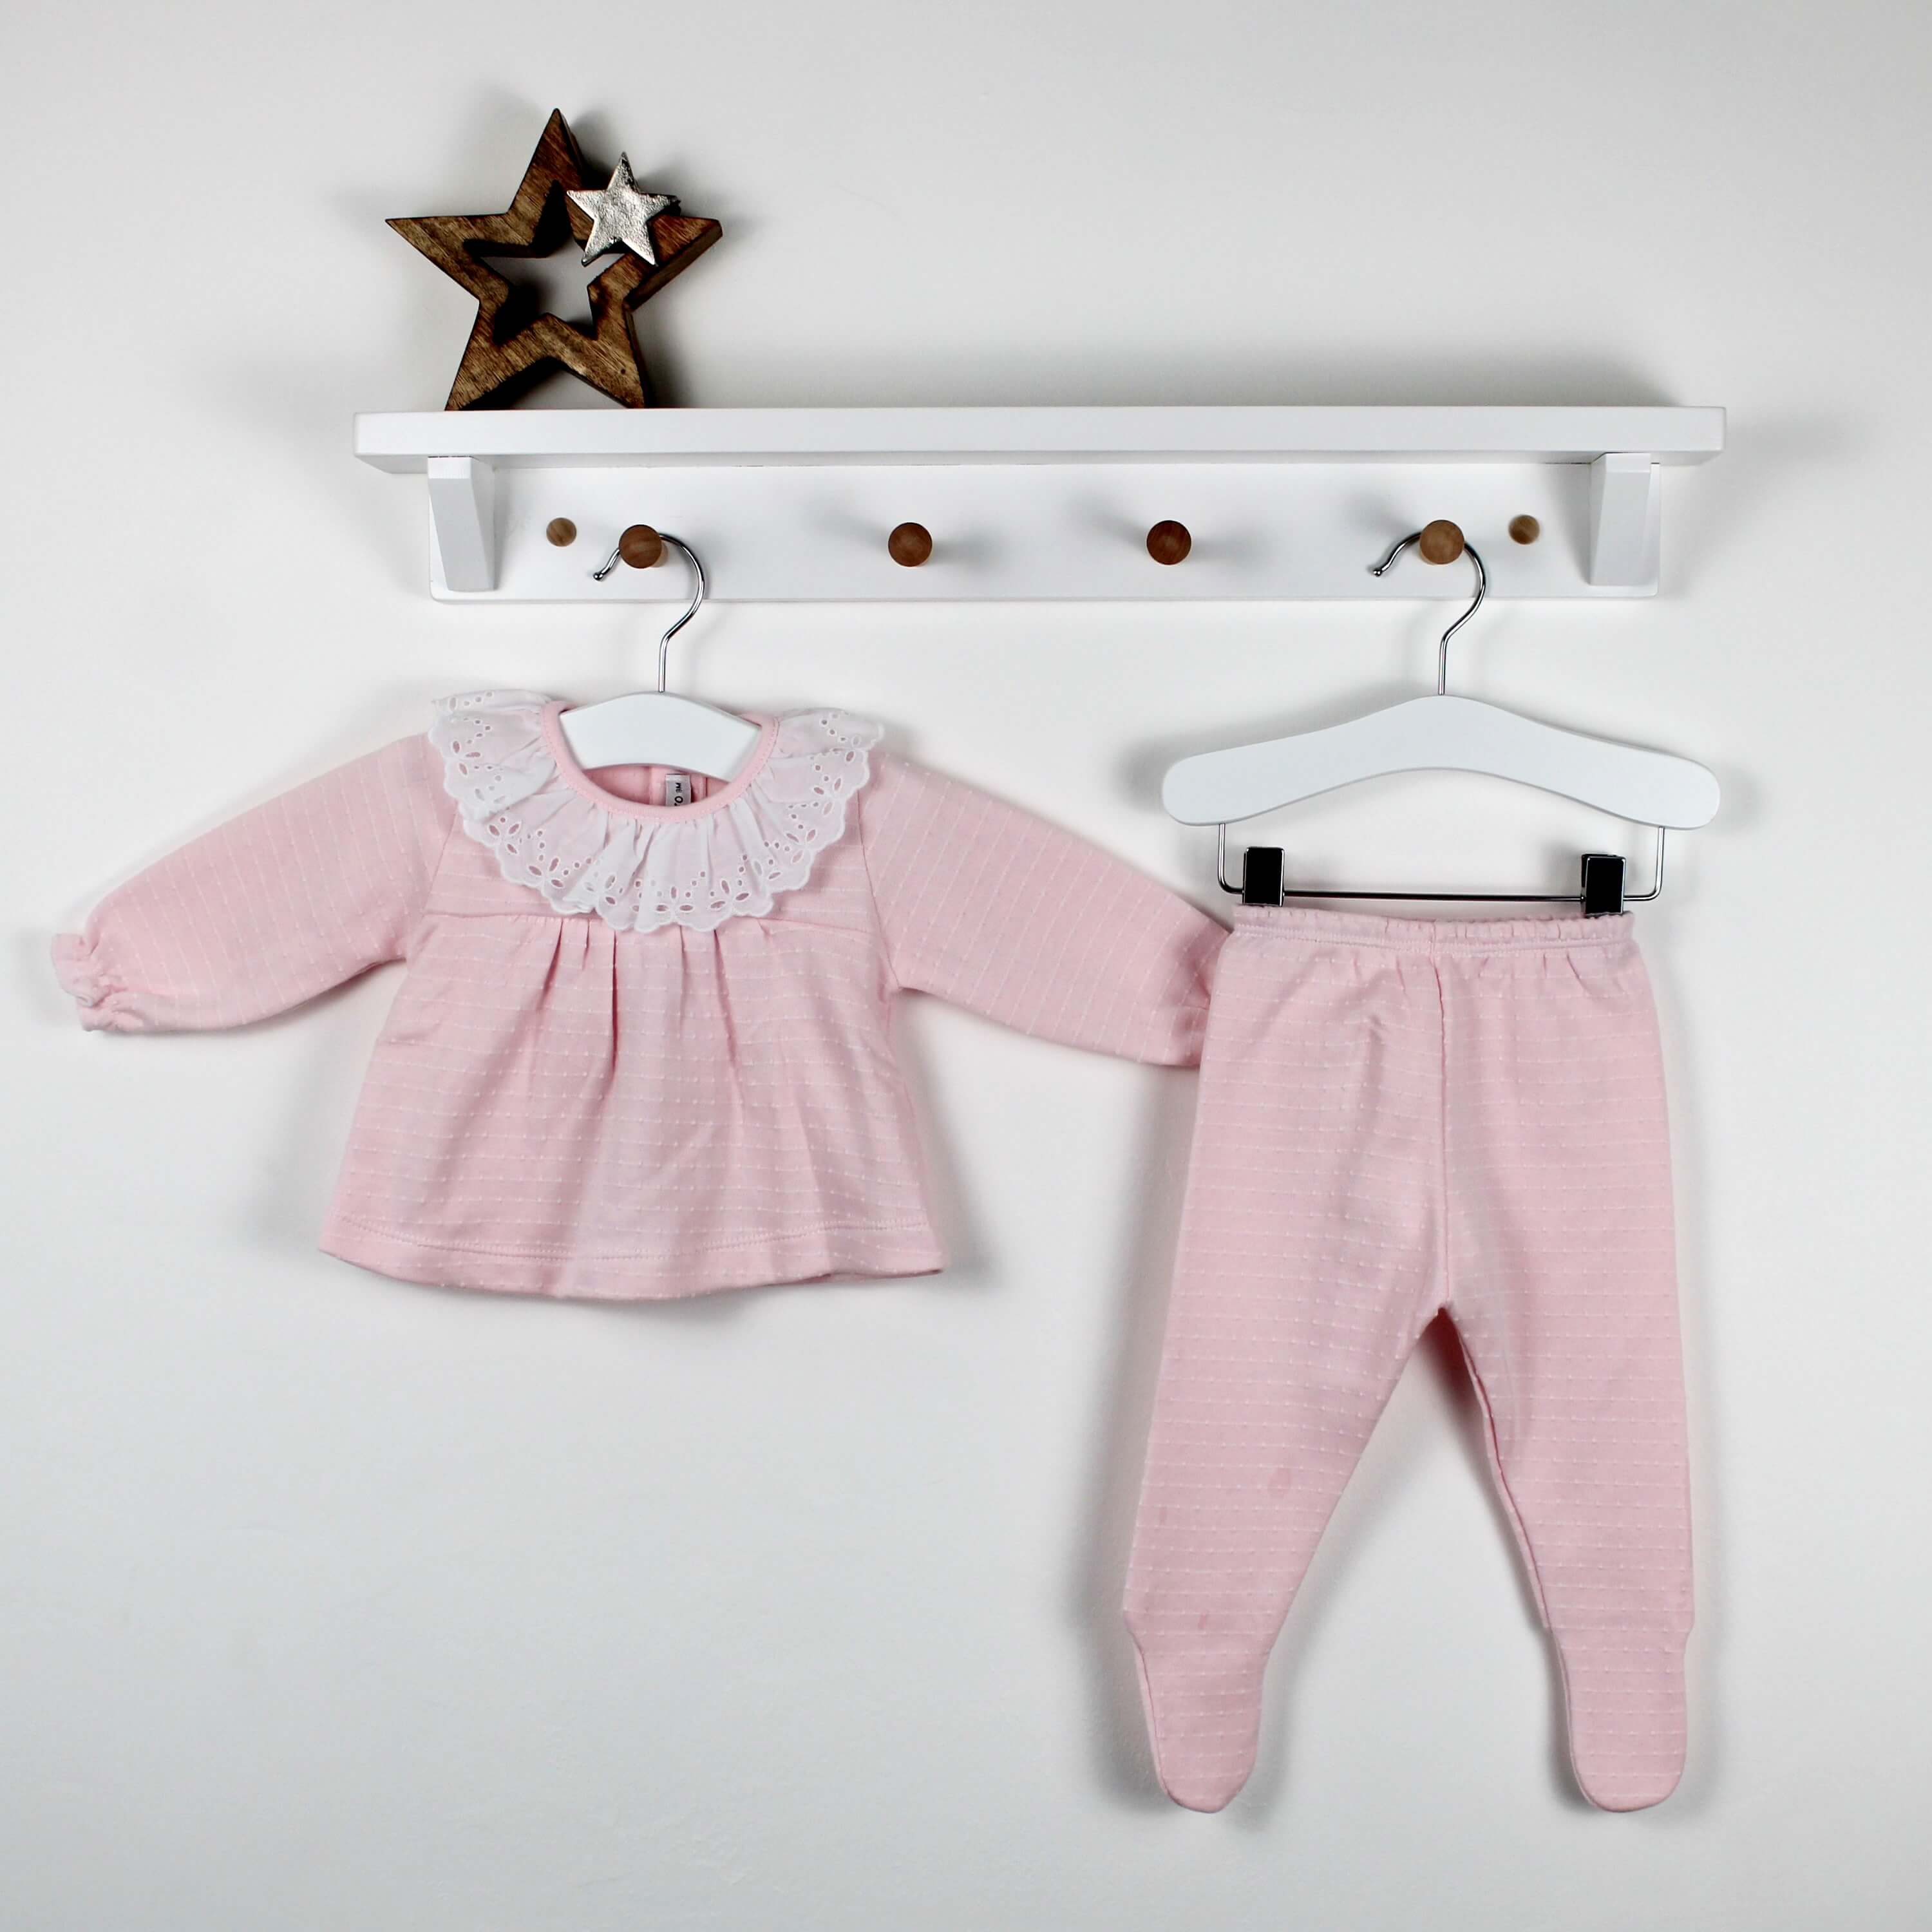 pink top and leggings set